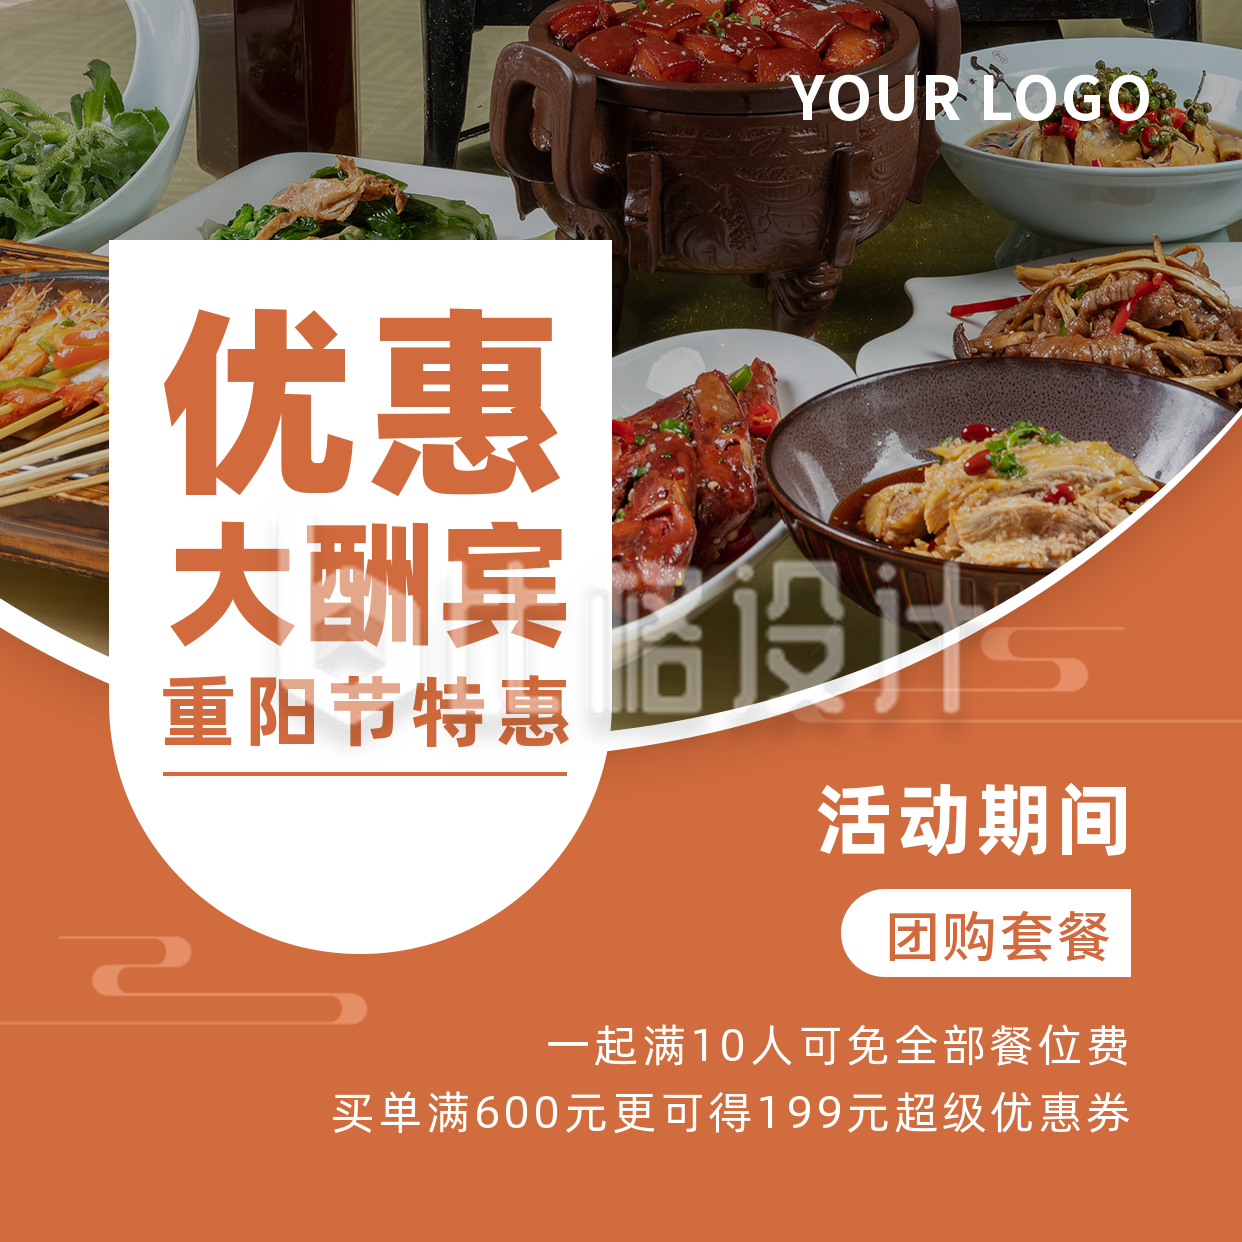 重阳节餐饮优惠活动橙色实景方形海报